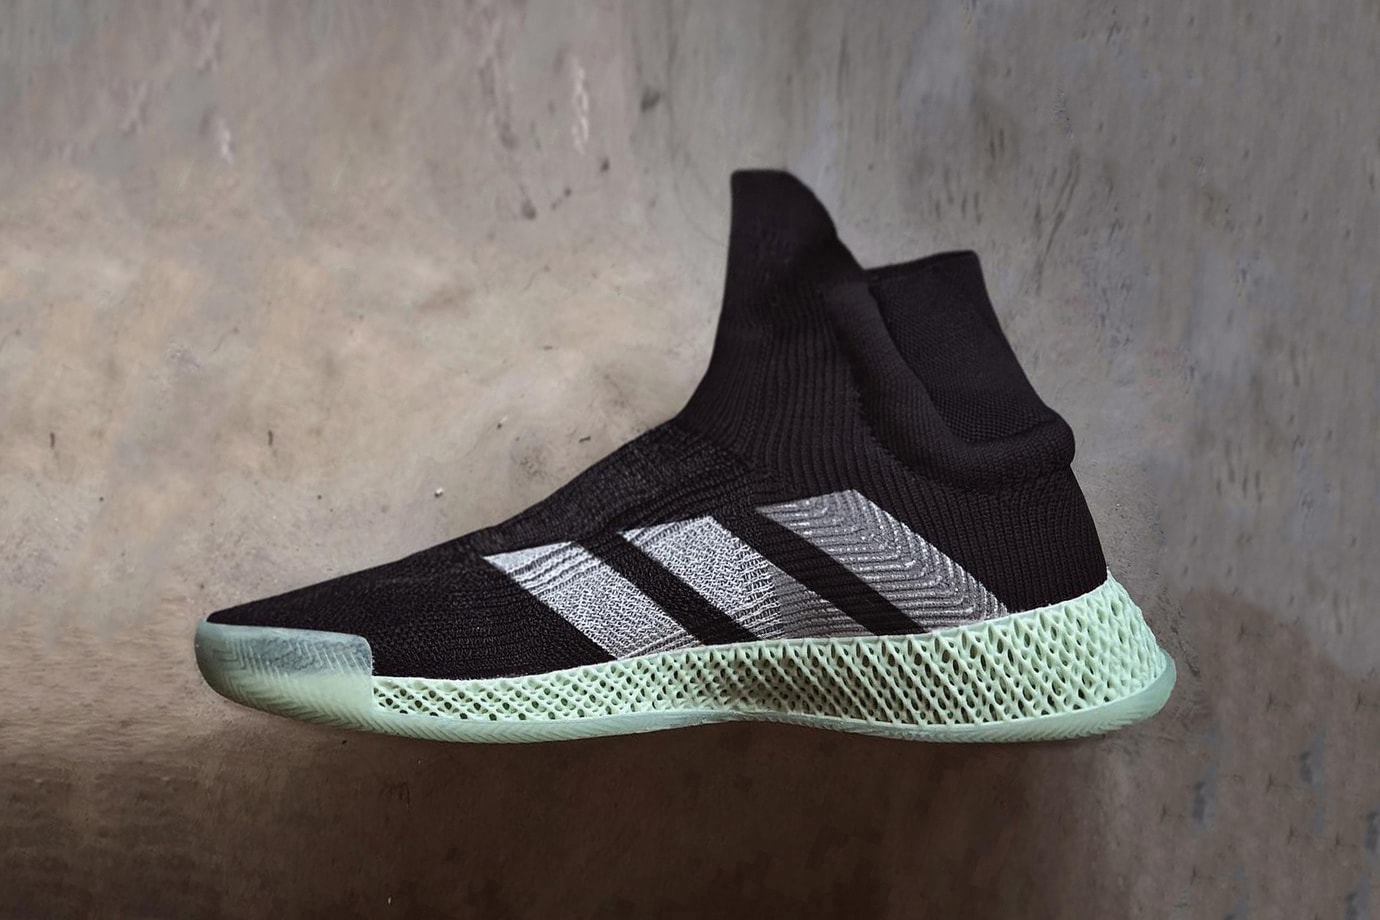 adidas FUTURECRAFT 4D Laceless Basketball Sneaker shoe marc dolce black footwear release date info drop